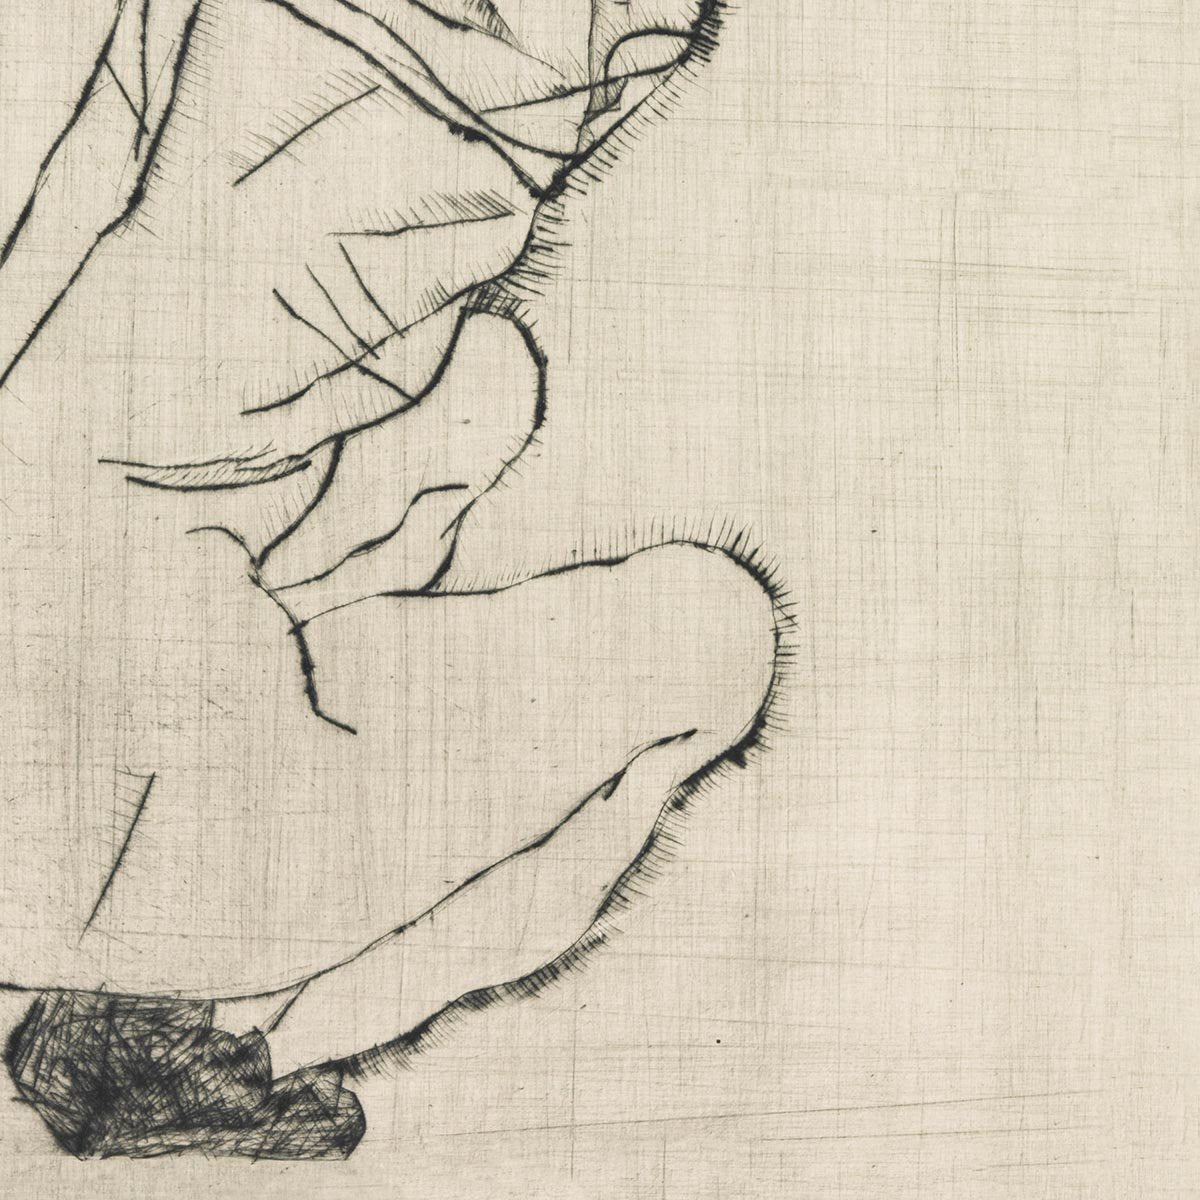 Squatting Woman by Egon Schiele